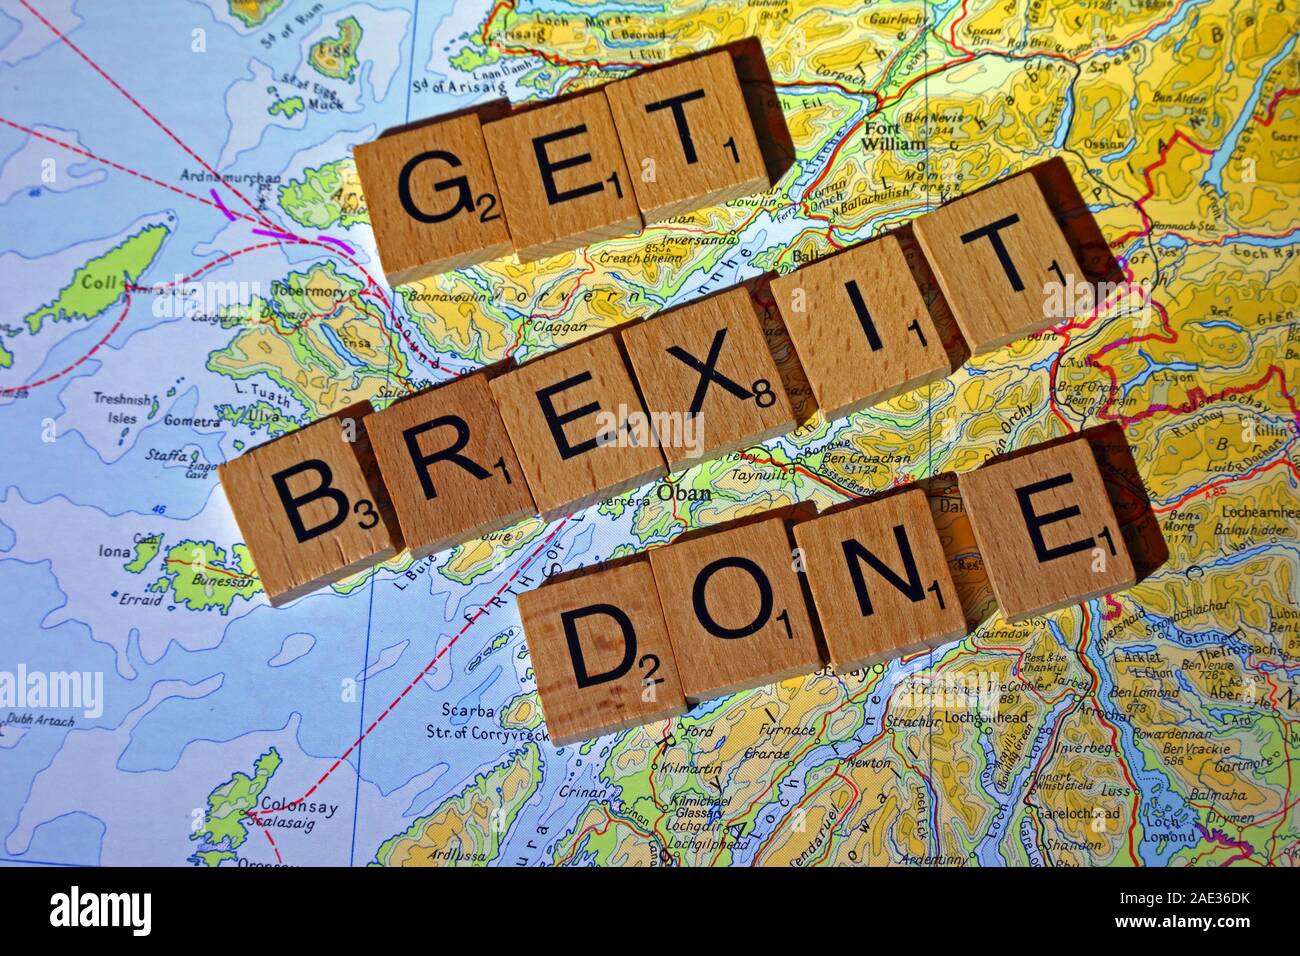 Ottenere Brexit fatto farro Scrabble in lettere su una mappa scozzese - Elezioni generali, alle elezioni politiche di partito leader,,parti,rivendicazioni,dubbi Foto Stock